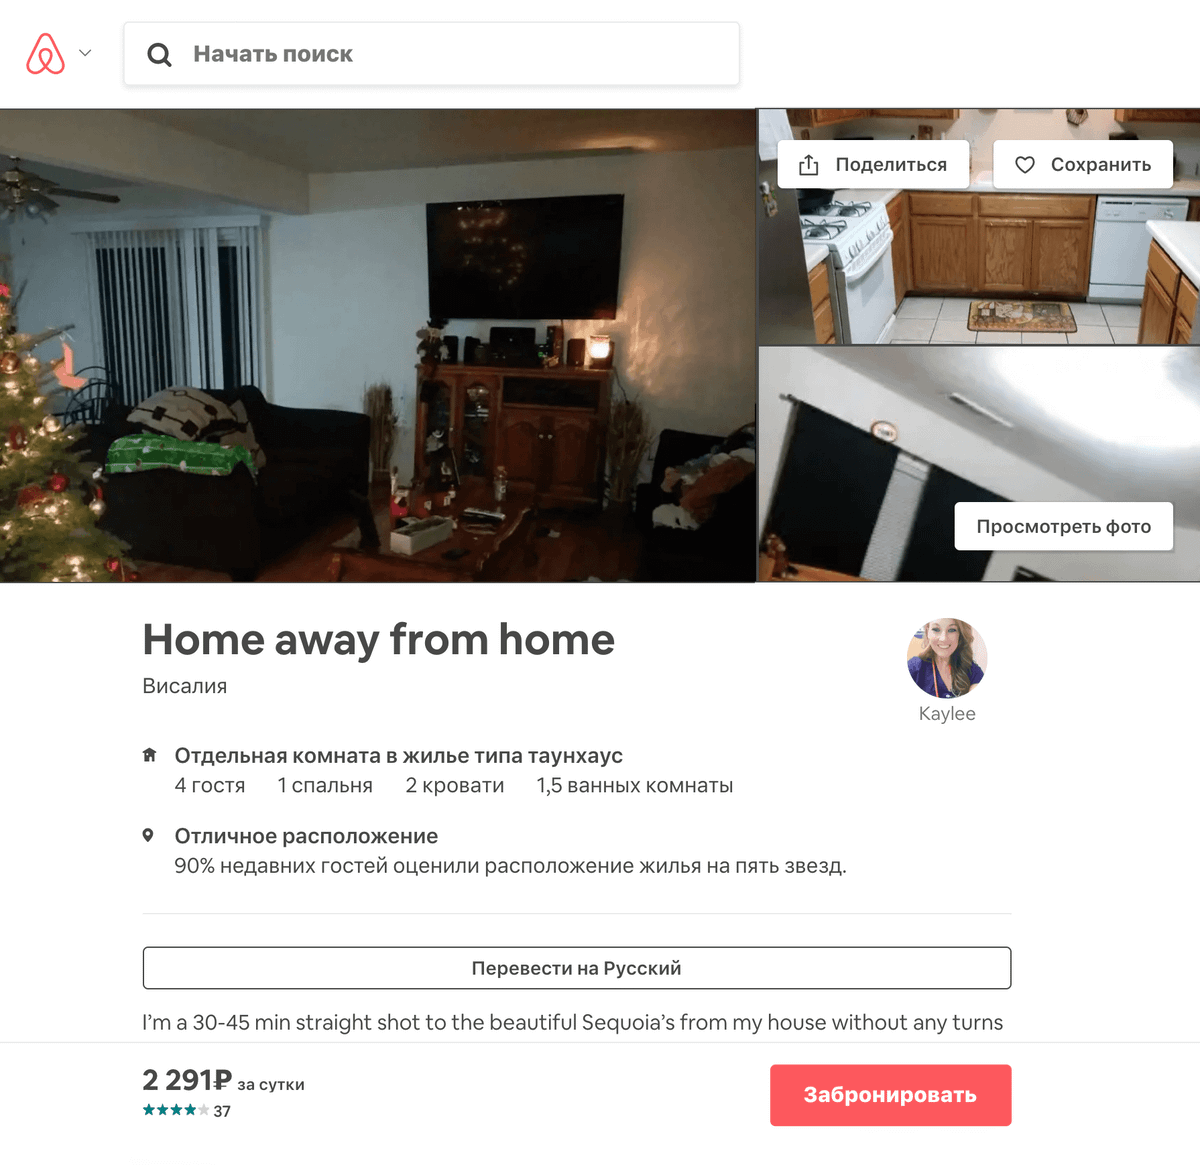 Так выглядело объявление на&nbsp;Airbnb. Когда мы ее бронировали, комната стоила 69 $ за&nbsp;двое суток. Цена нас устроила, и мы отправили хозяйке запрос на&nbsp;бронирование на&nbsp;нужные нам даты